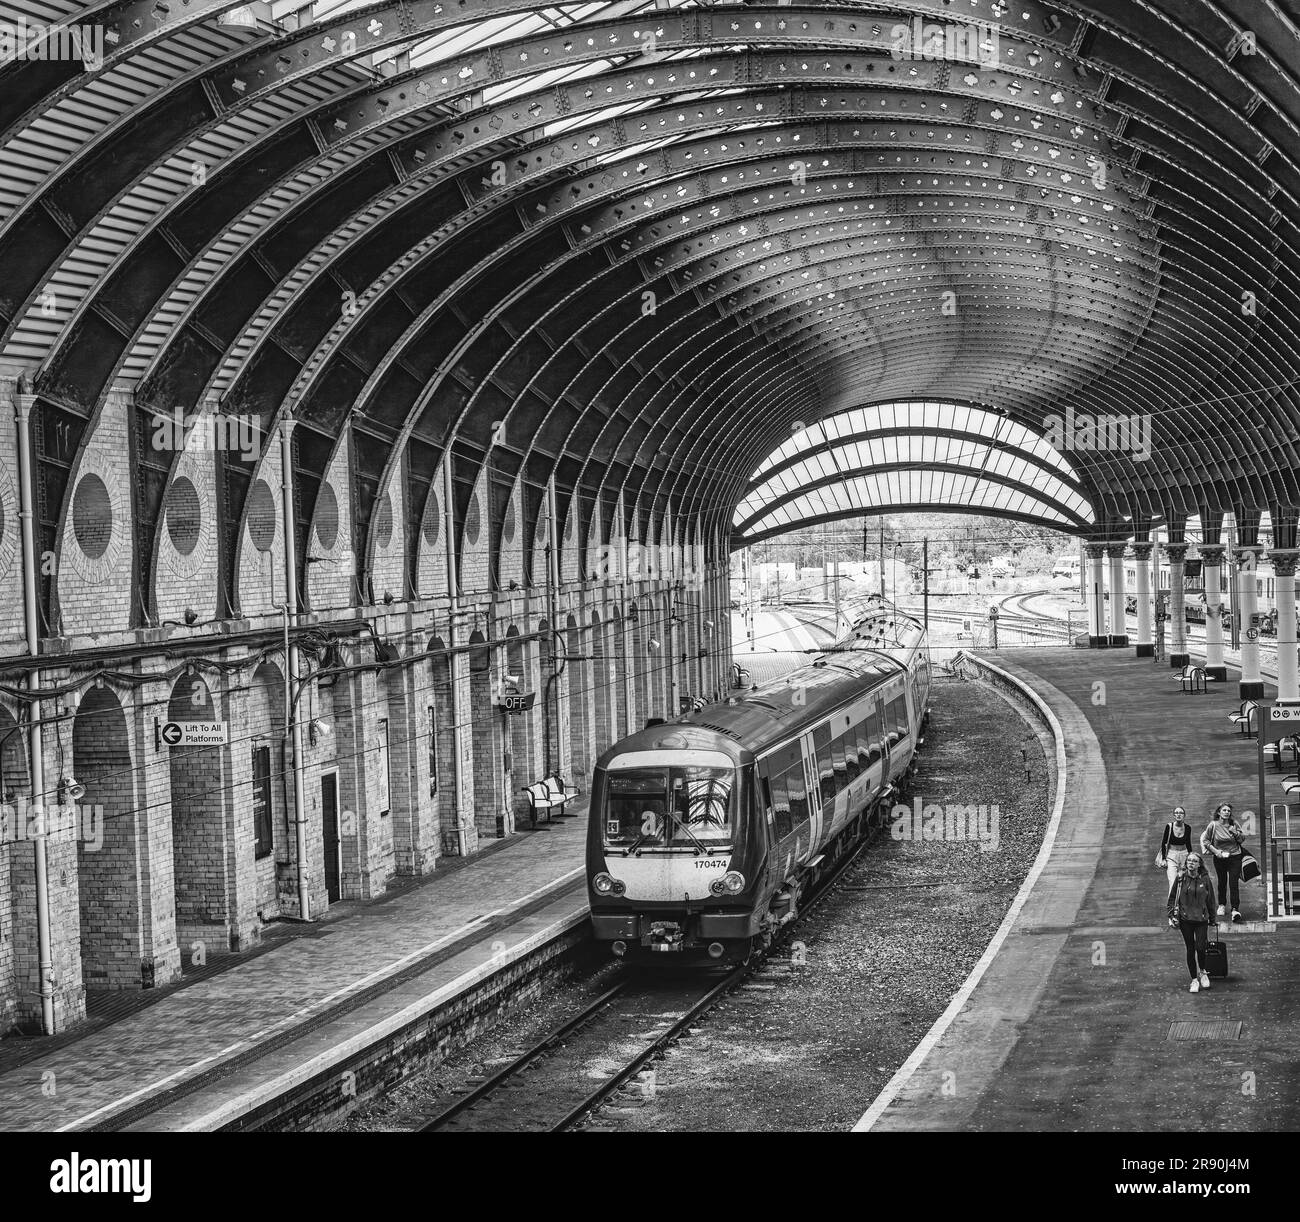 Ein Zug fährt unter einem historischen Eisendach aus dem 19. Jahrhundert von einem Bahnhof ab. Drei Passagiere verlassen eine Plattform mit Blick nach oben. Stockfoto